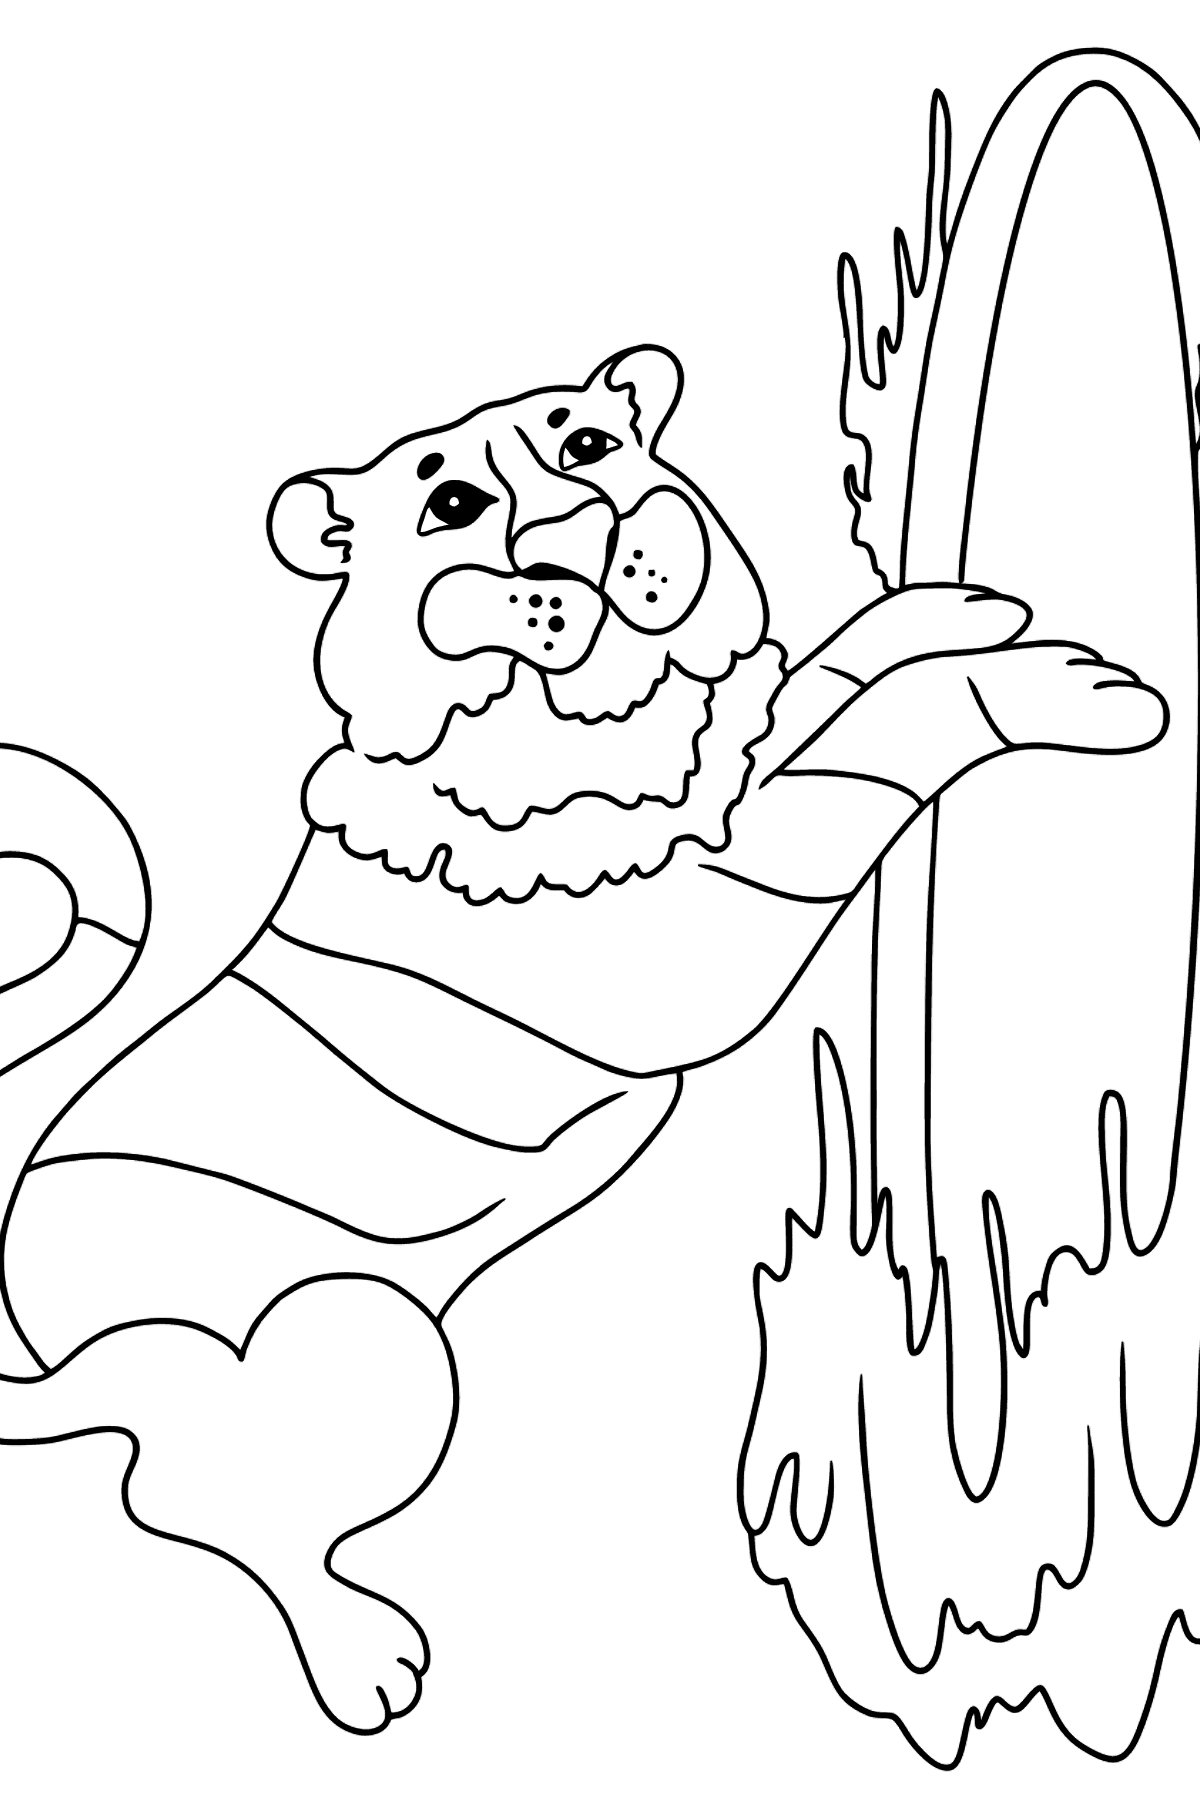 Desenho de tigre no circo para colorir (fácil) - Imagens para Colorir para Crianças